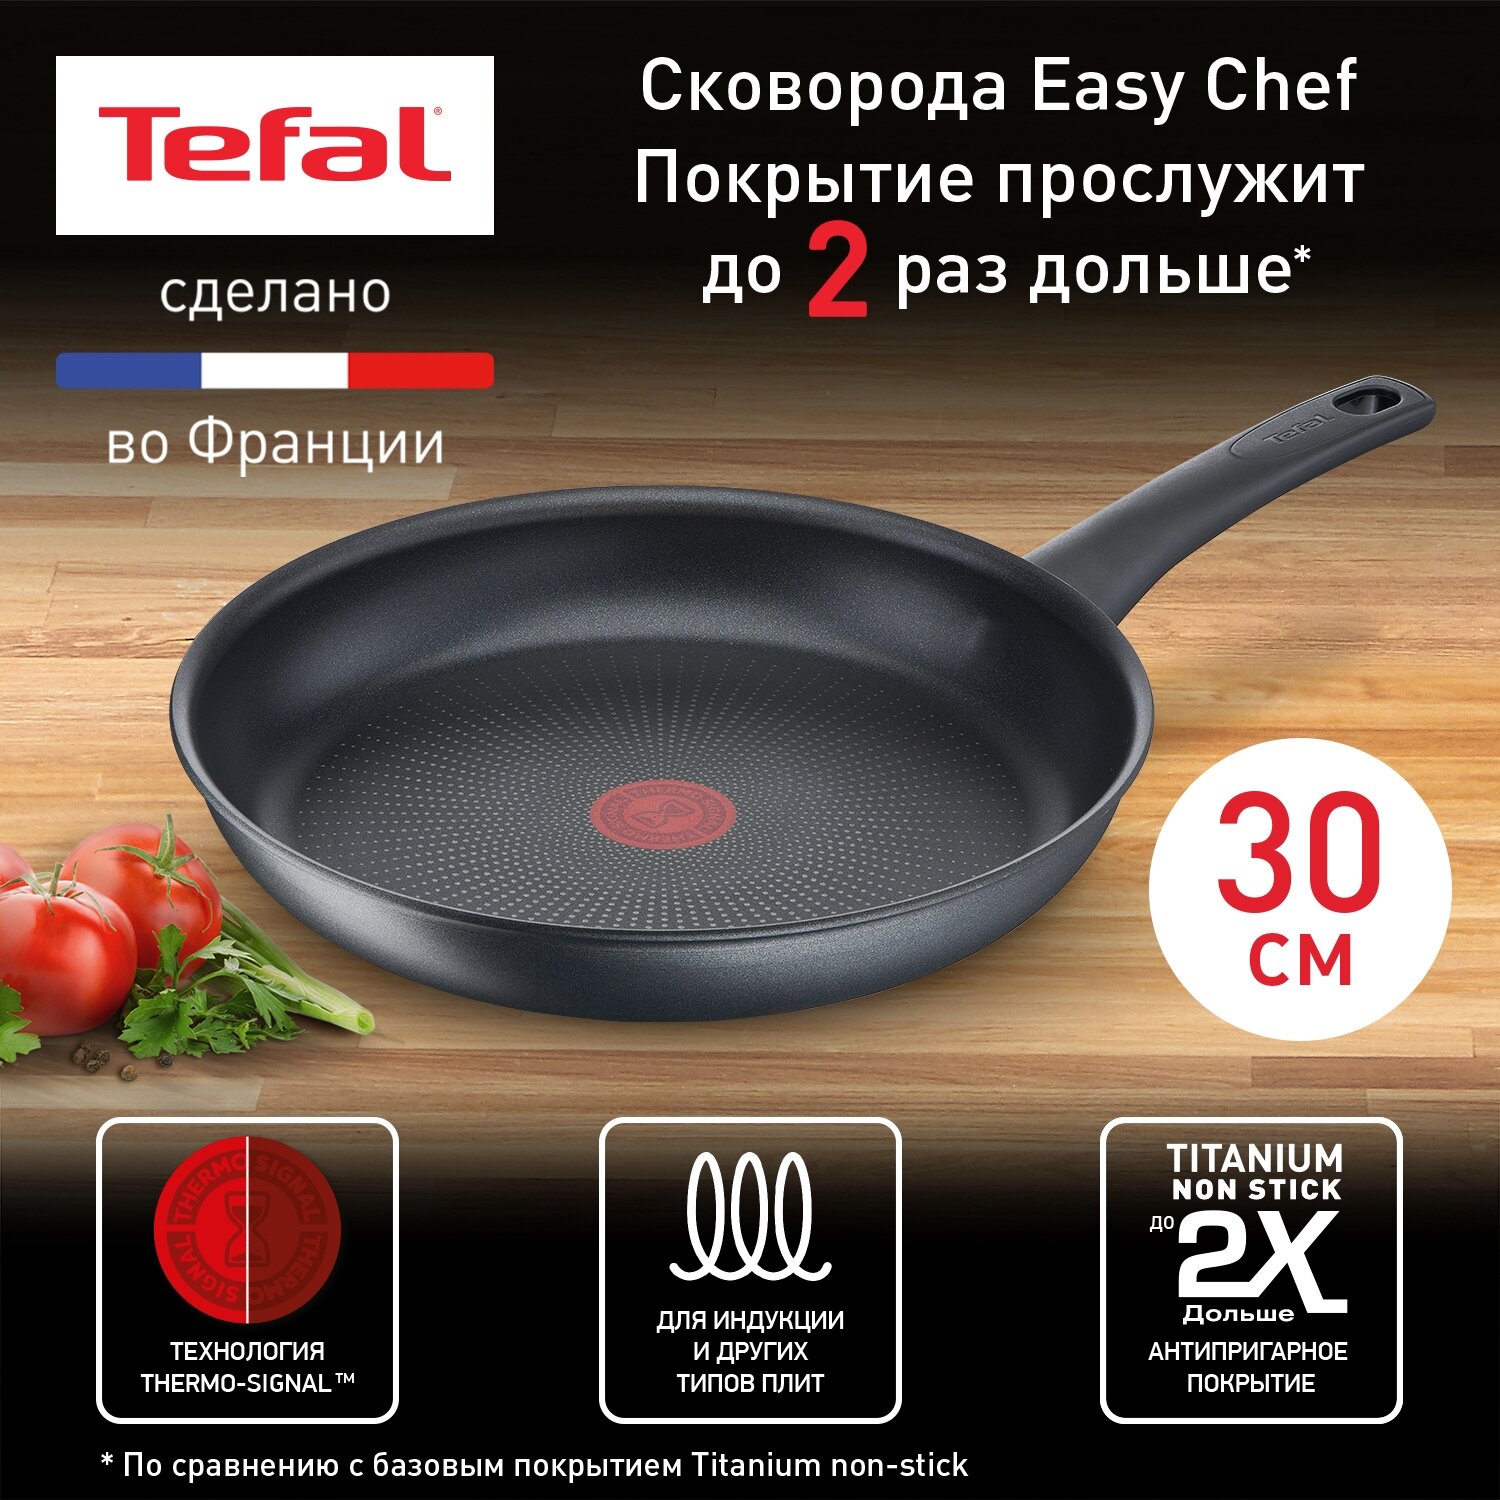 Сковорода Tefal Easy Chef G2700772, диаметр 30 см, с индикатором температуры, с антипригарным покрытием, для газовых, электрических и индукционных плит, сделано во Франции